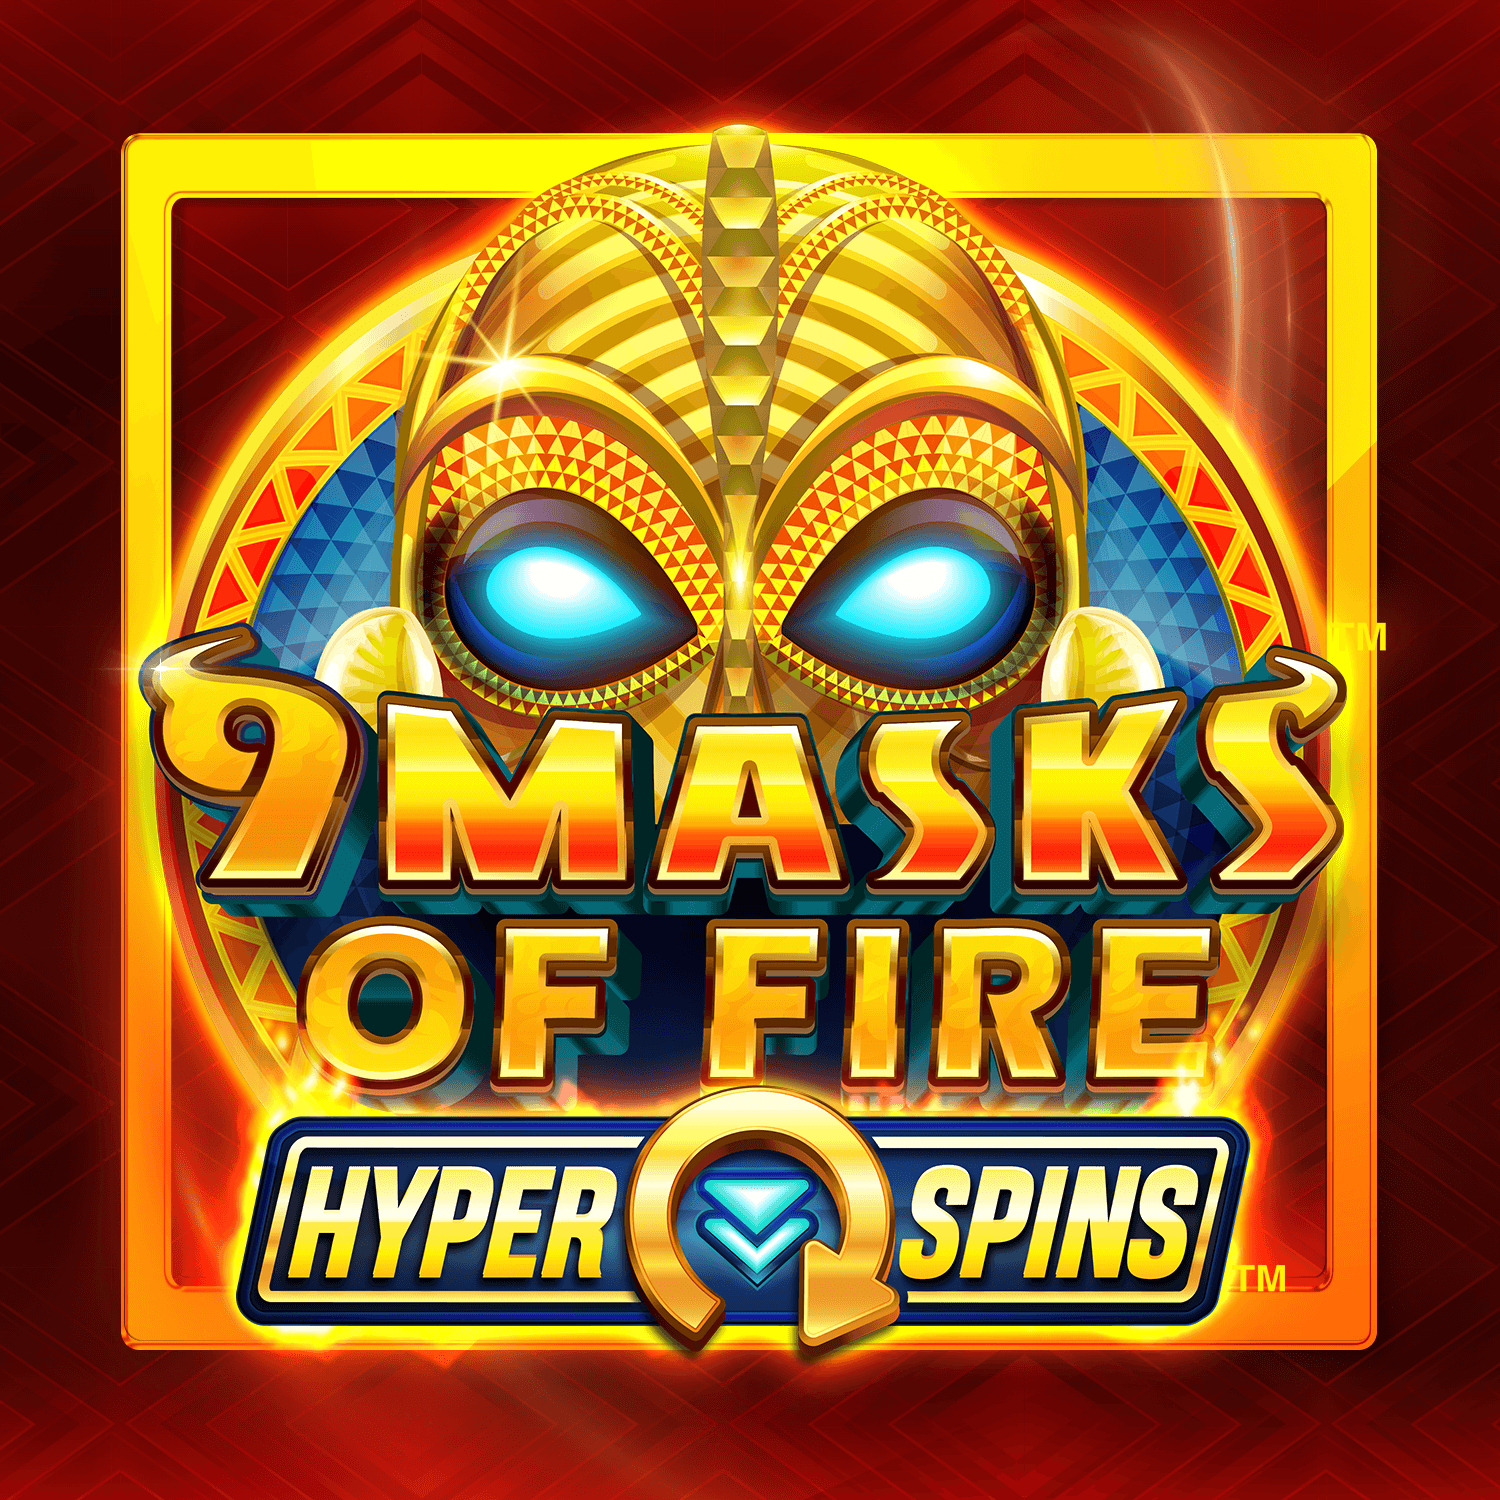 9 Masks of Fire Hyper Spins